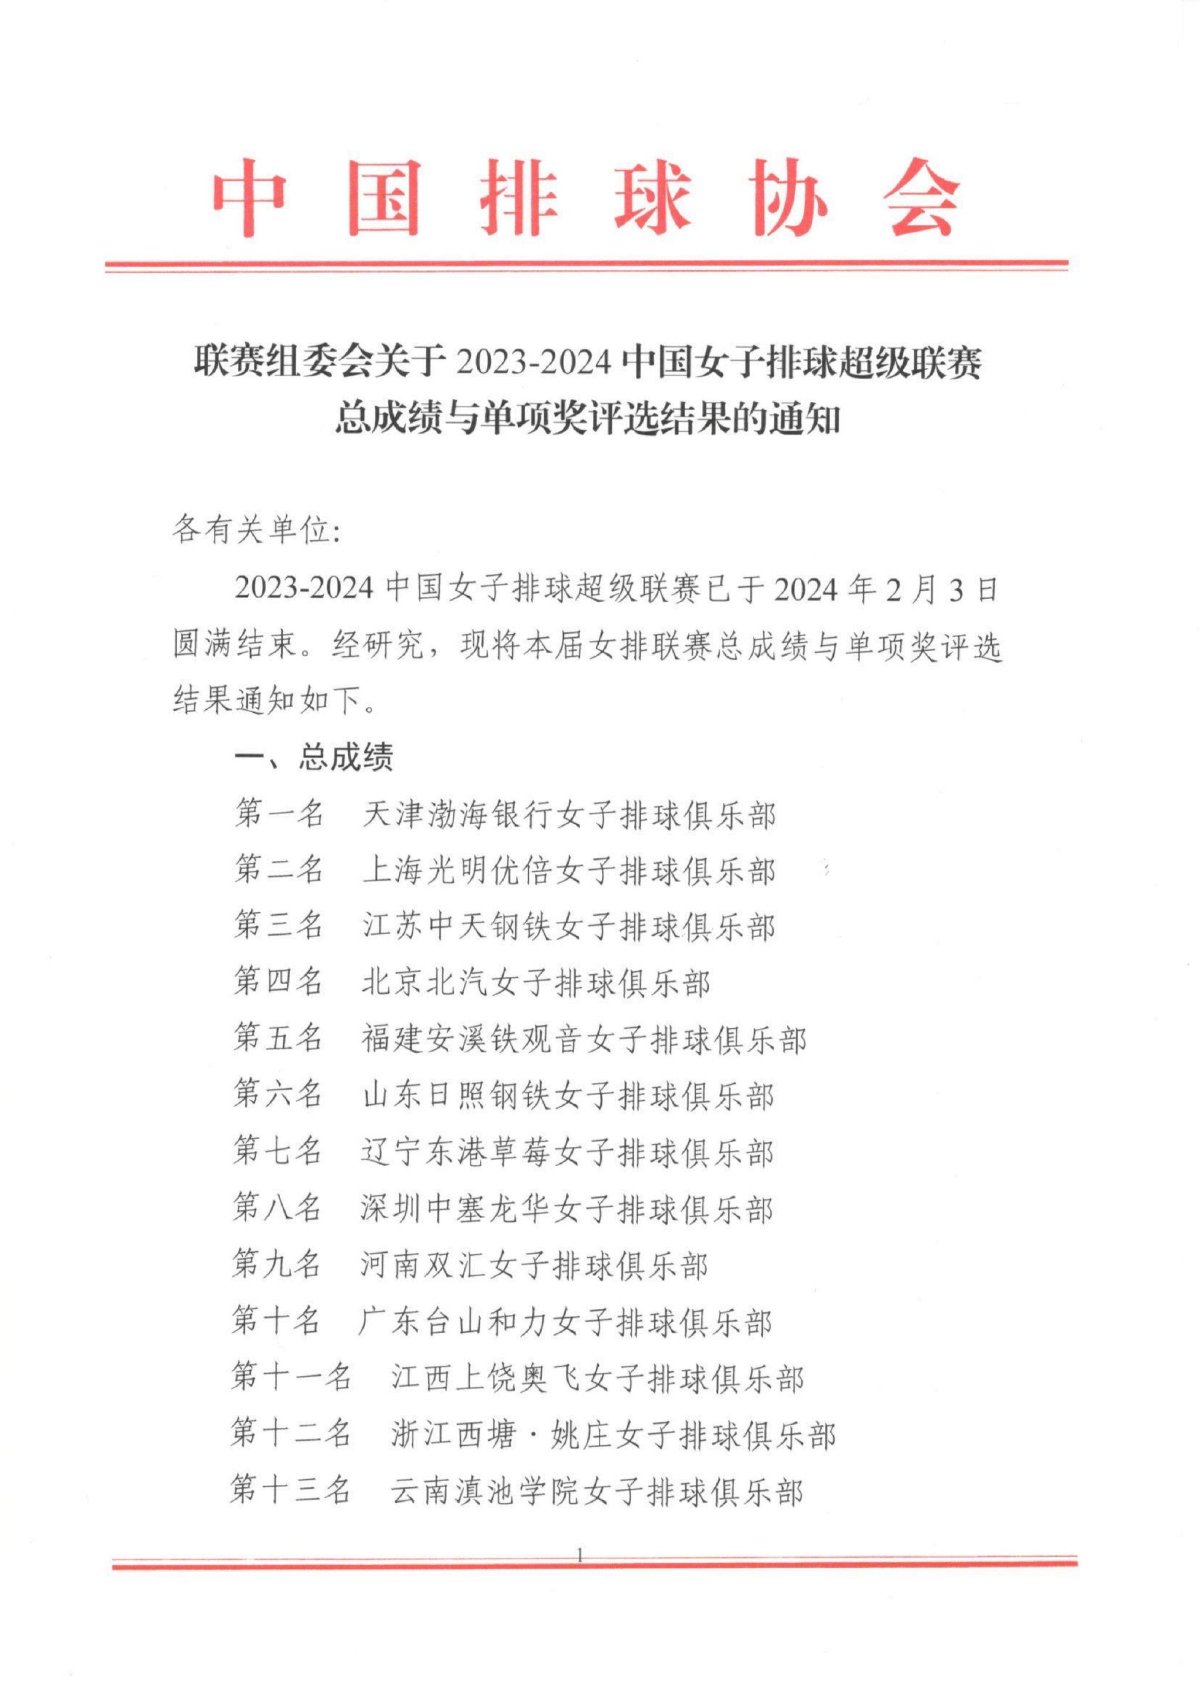 联赛组委会关于2023-2024中国女子排球超级联赛总成绩与单项奖评选结果的通知_00